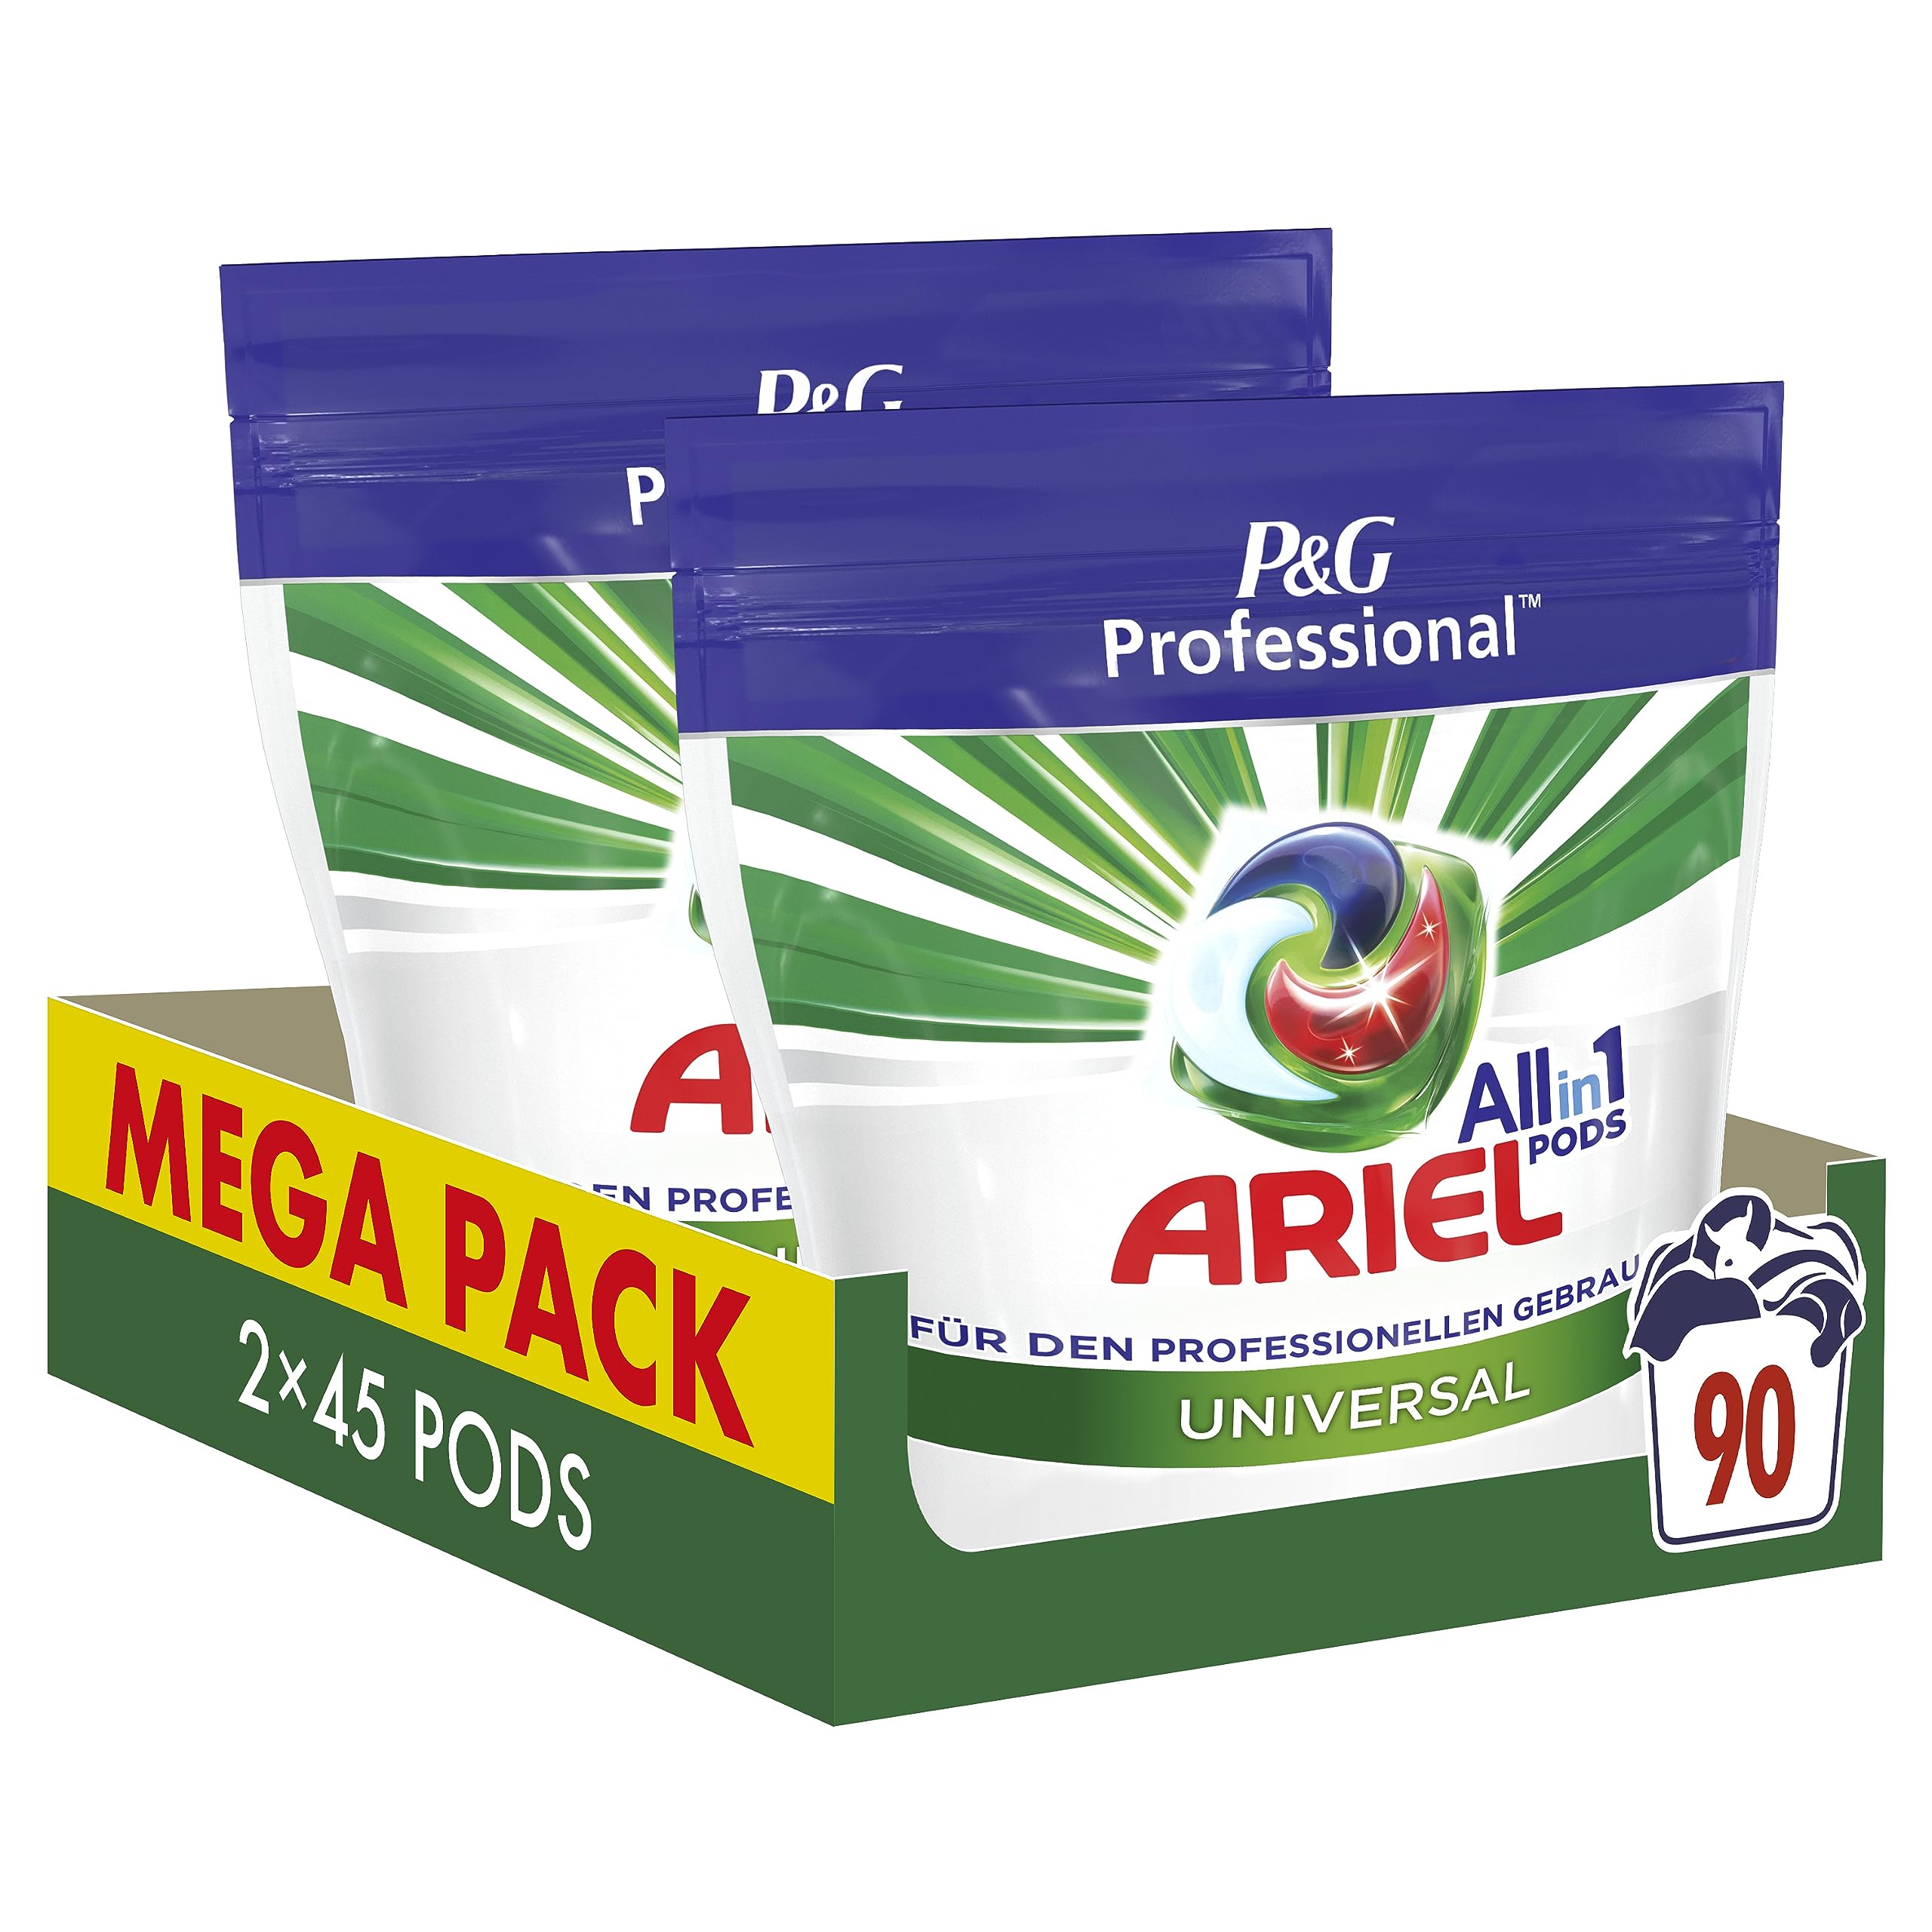 Ariel Professional All-in-1 Pods Regulär Waschmittel, 90 Waschladungen (2 x 45 Kapseln), Ausgezeichnete Fleckentfernung schon ab der ersten Wäsche